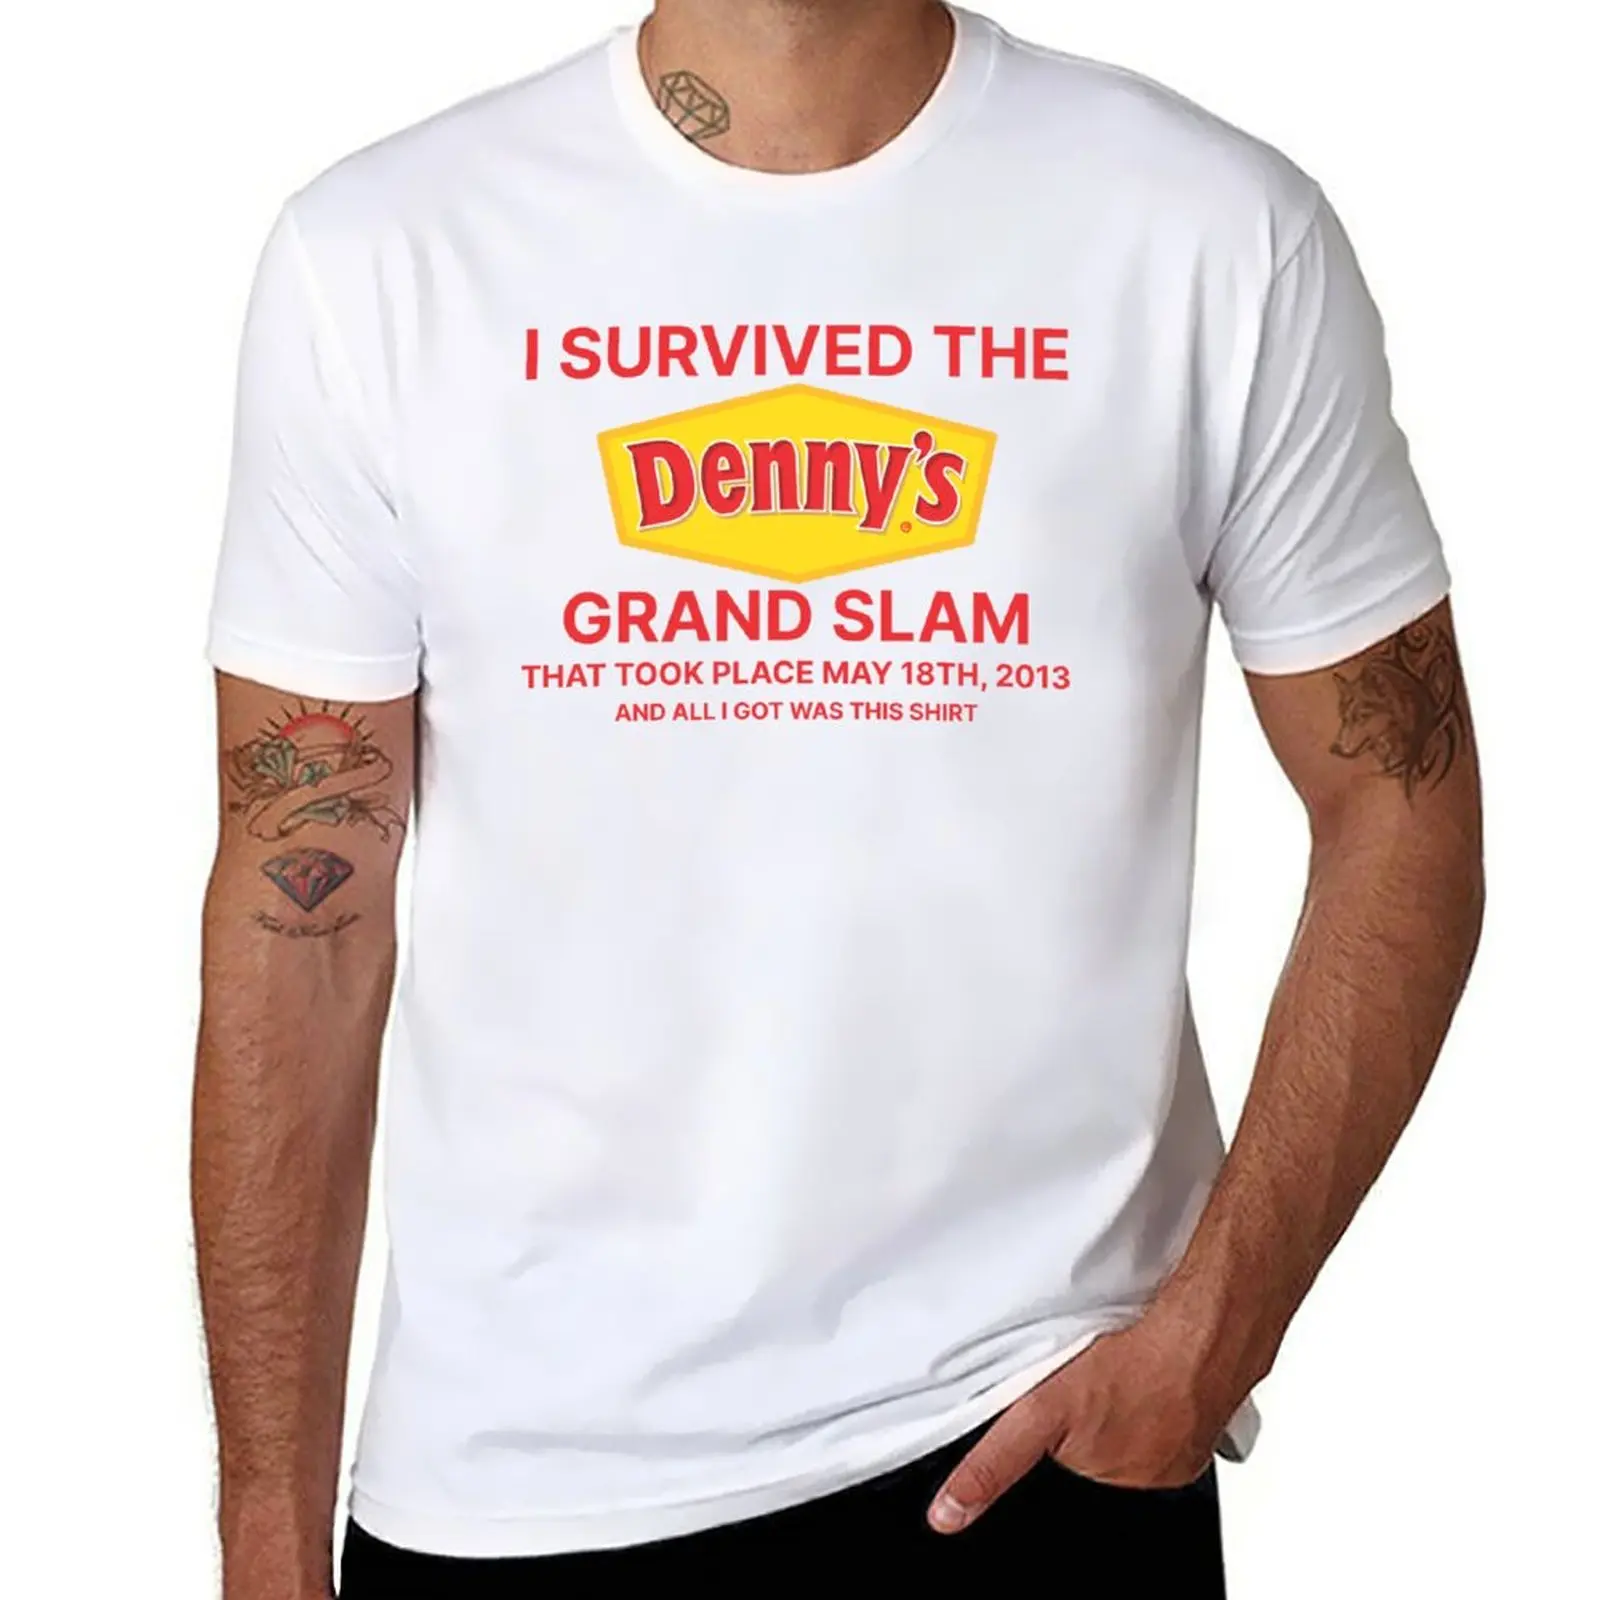 

New dennys grand slam shirt, i survived the dennys grand slam T-Shirt sublime t shirt black t shirt designer t shirt men